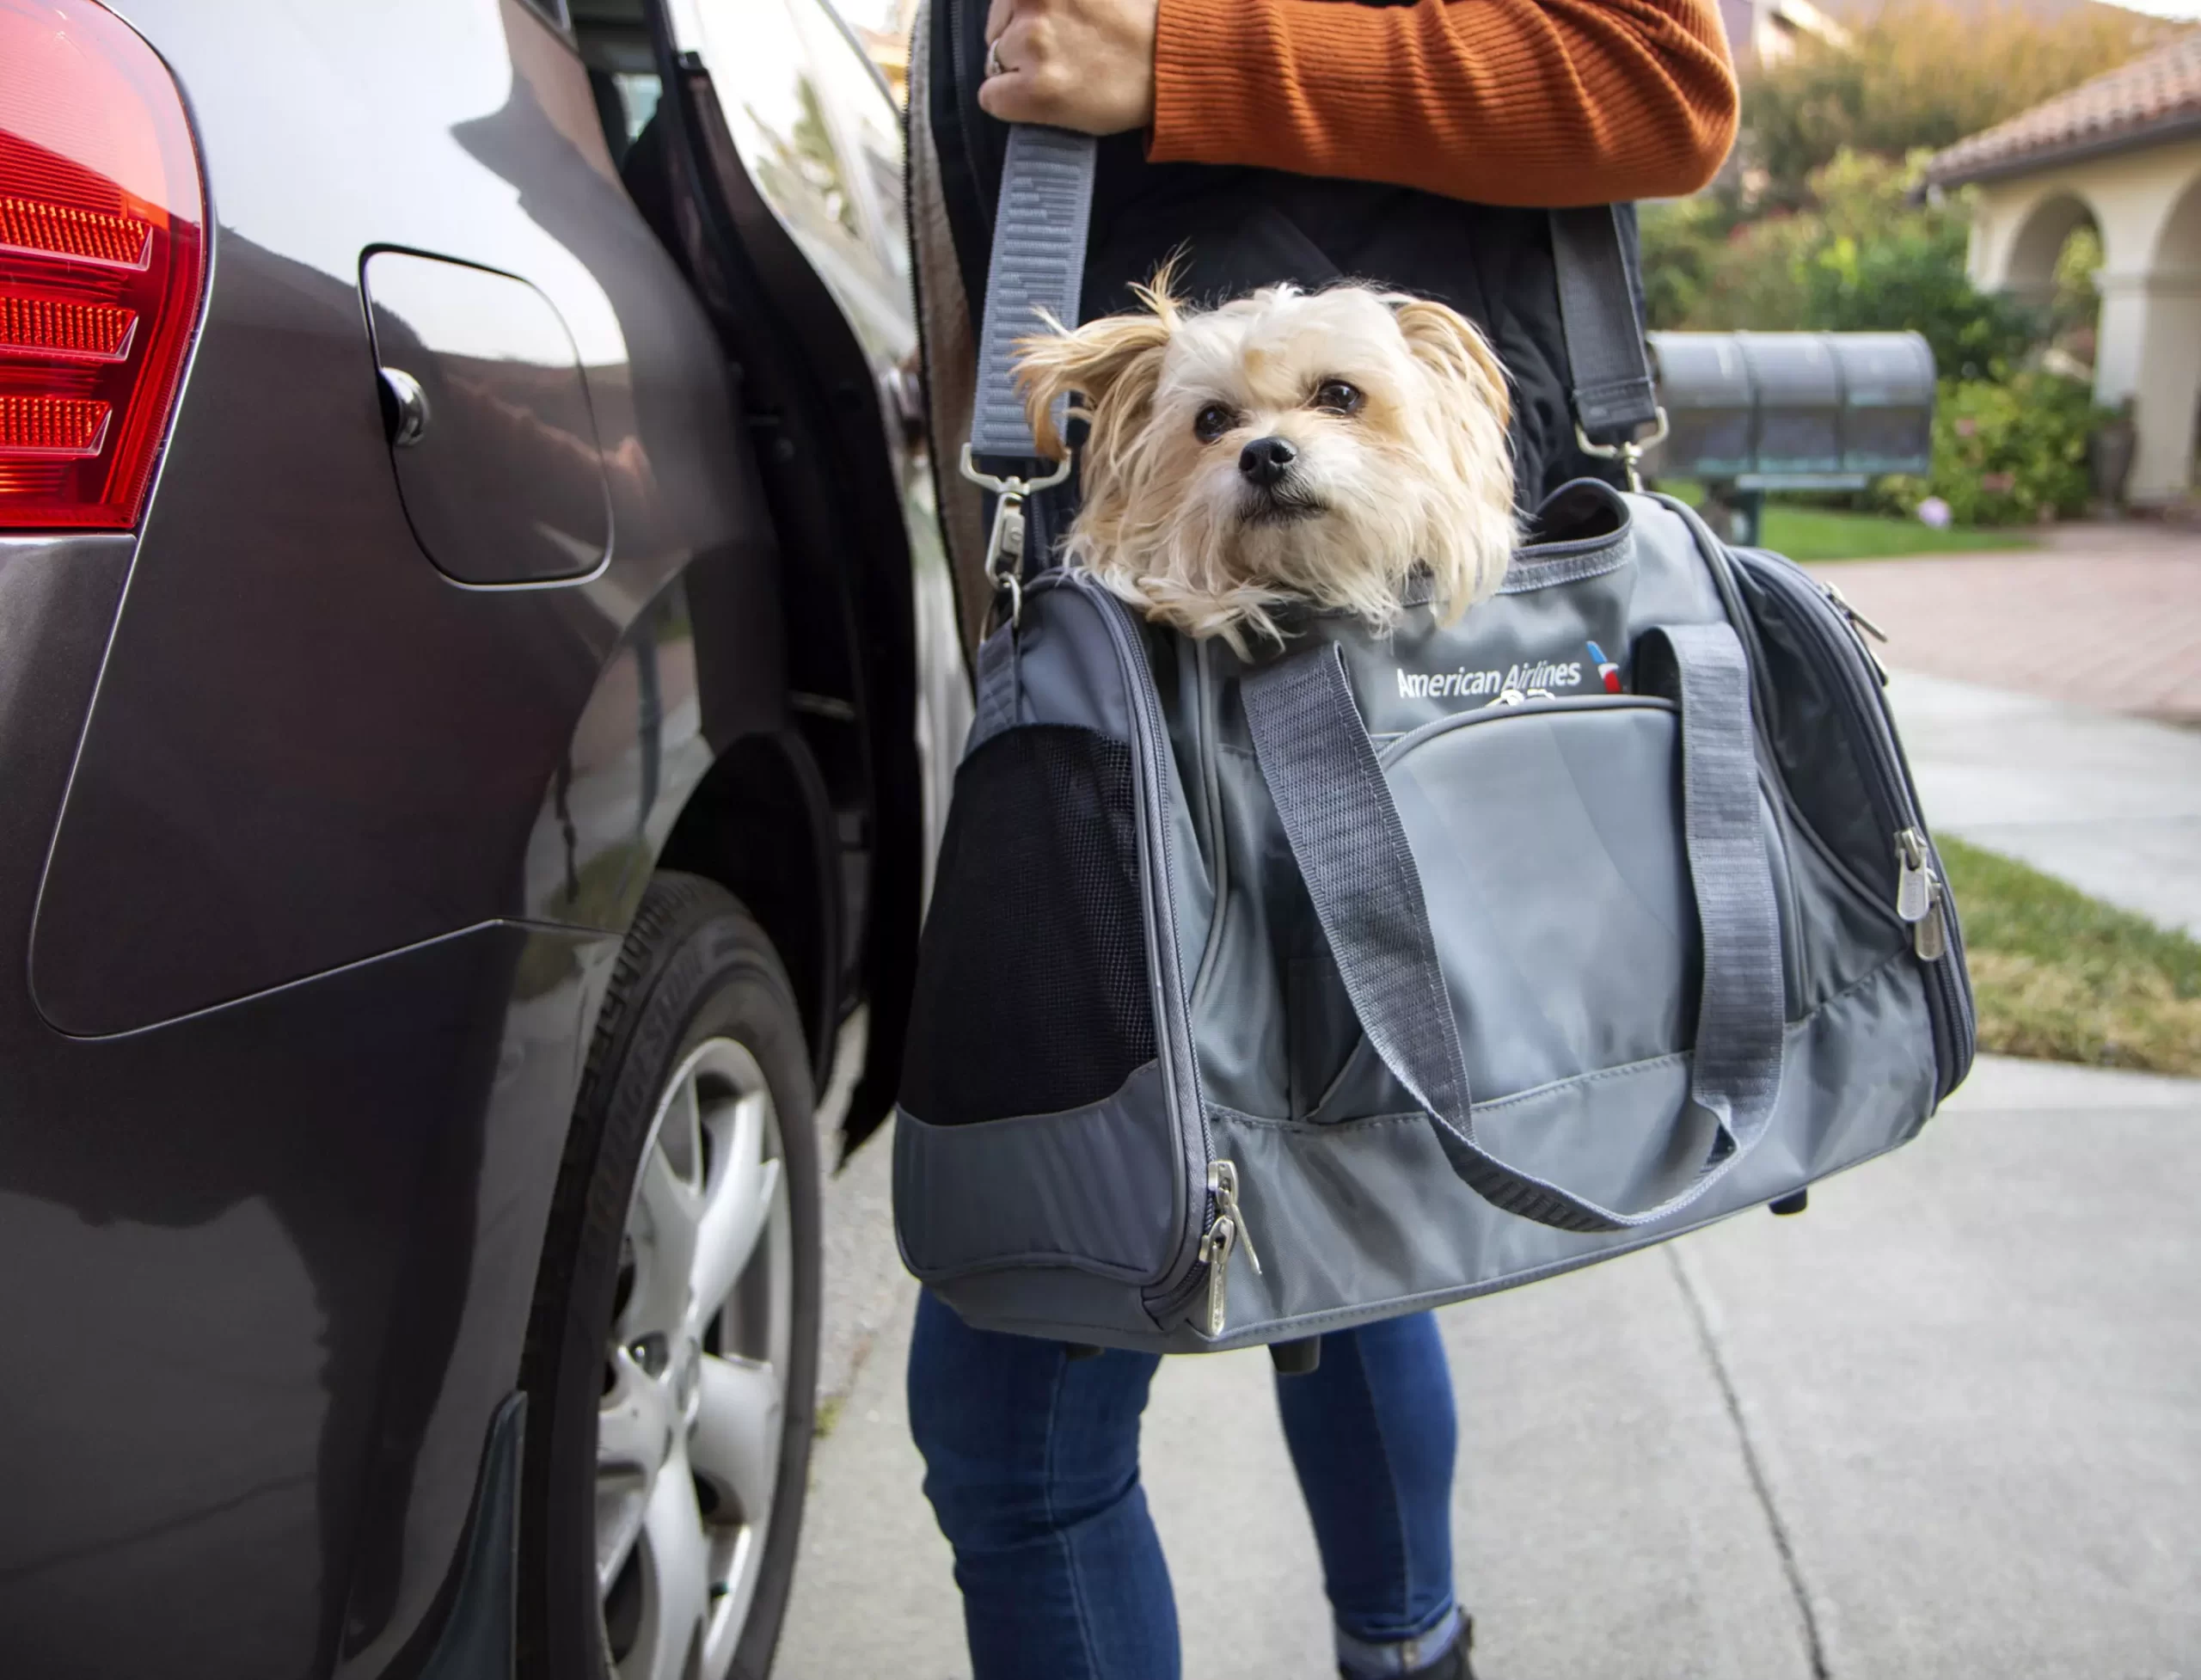 Politika e American Airlines për kafshët shtëpiake që lejon transportuesit e kafshëve shtëpiake